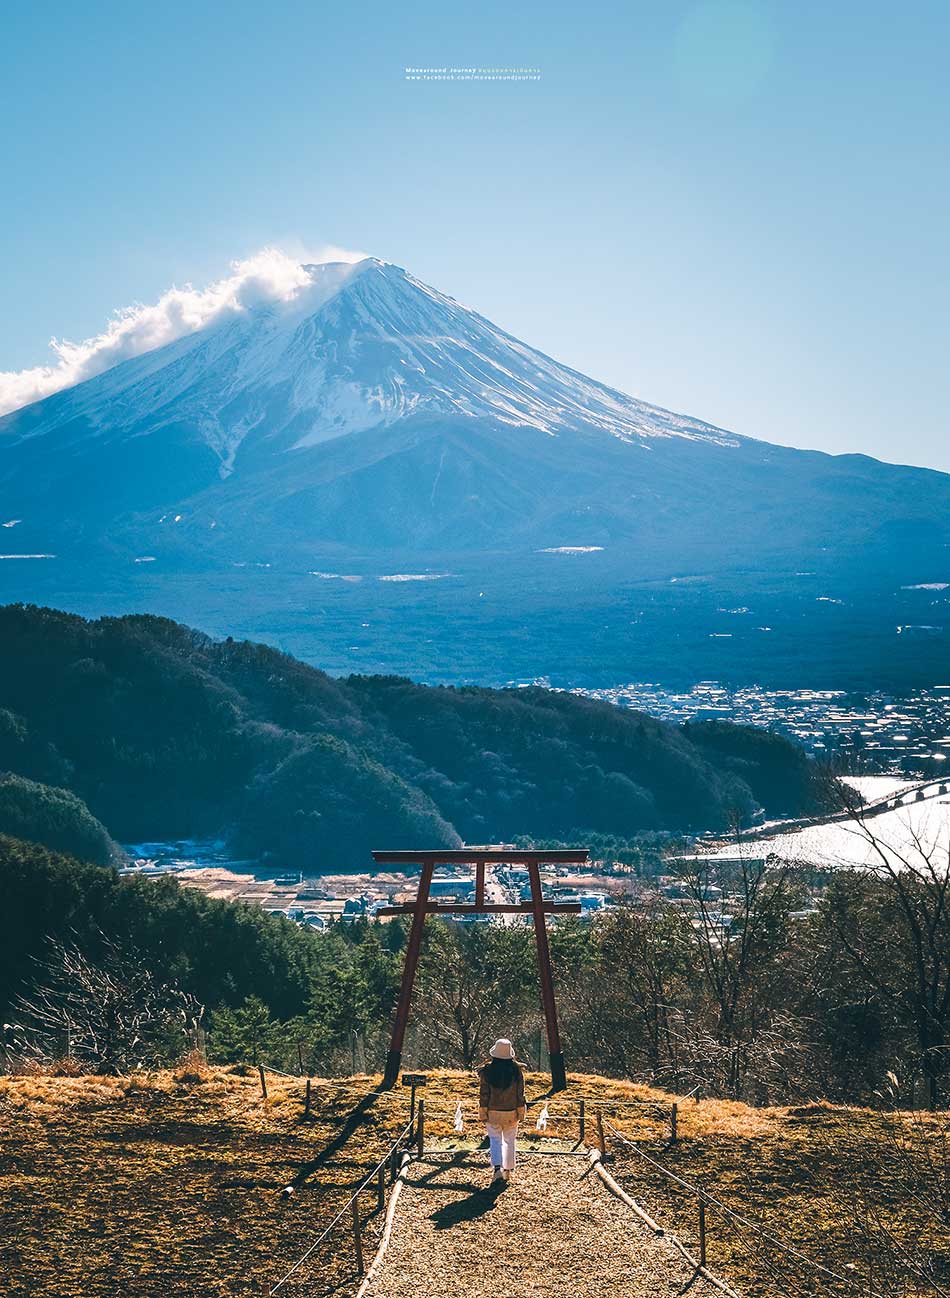 จุดถ่ายรูปภูเขาไฟฟูจิ Kawaguchi Asama Shrine